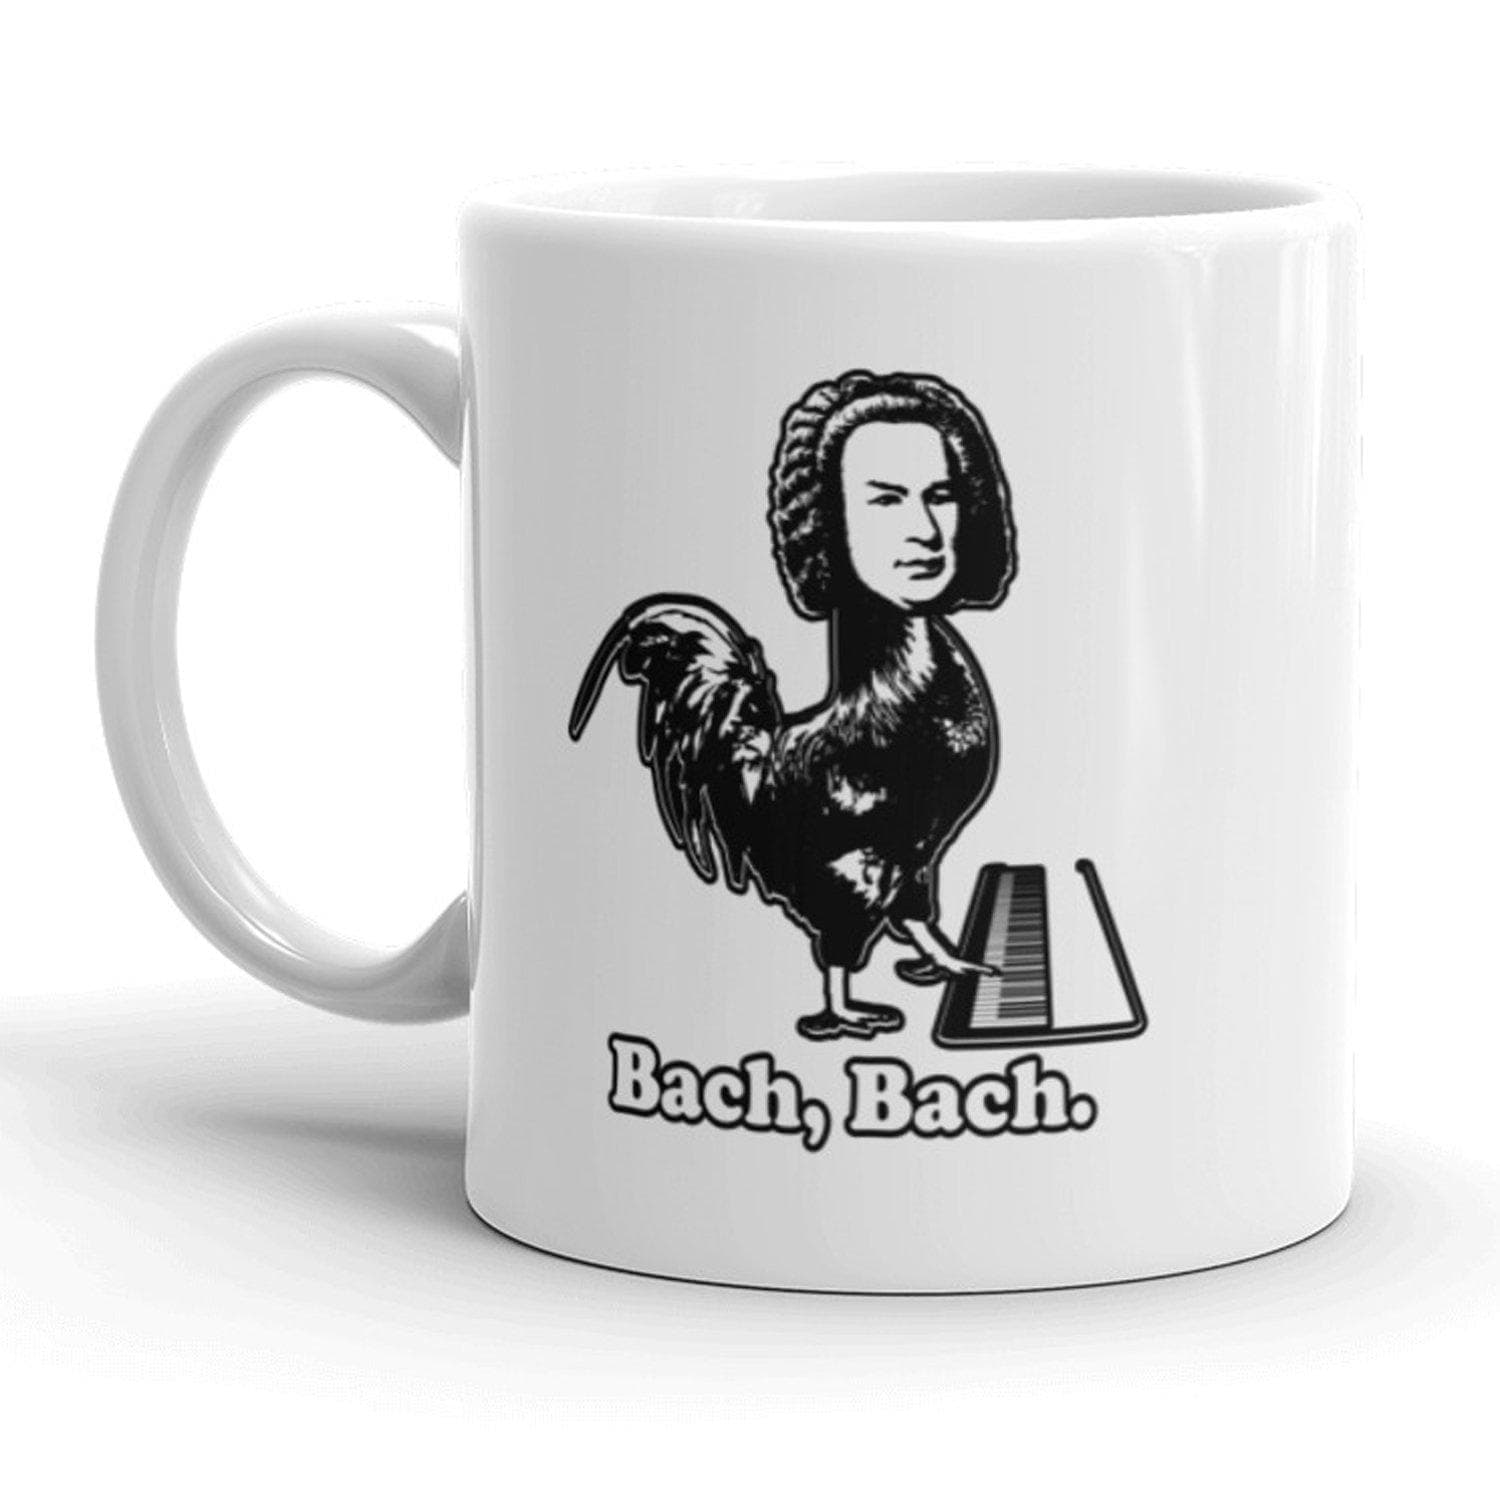 Bach Bach Mug - Crazy Dog T-Shirts